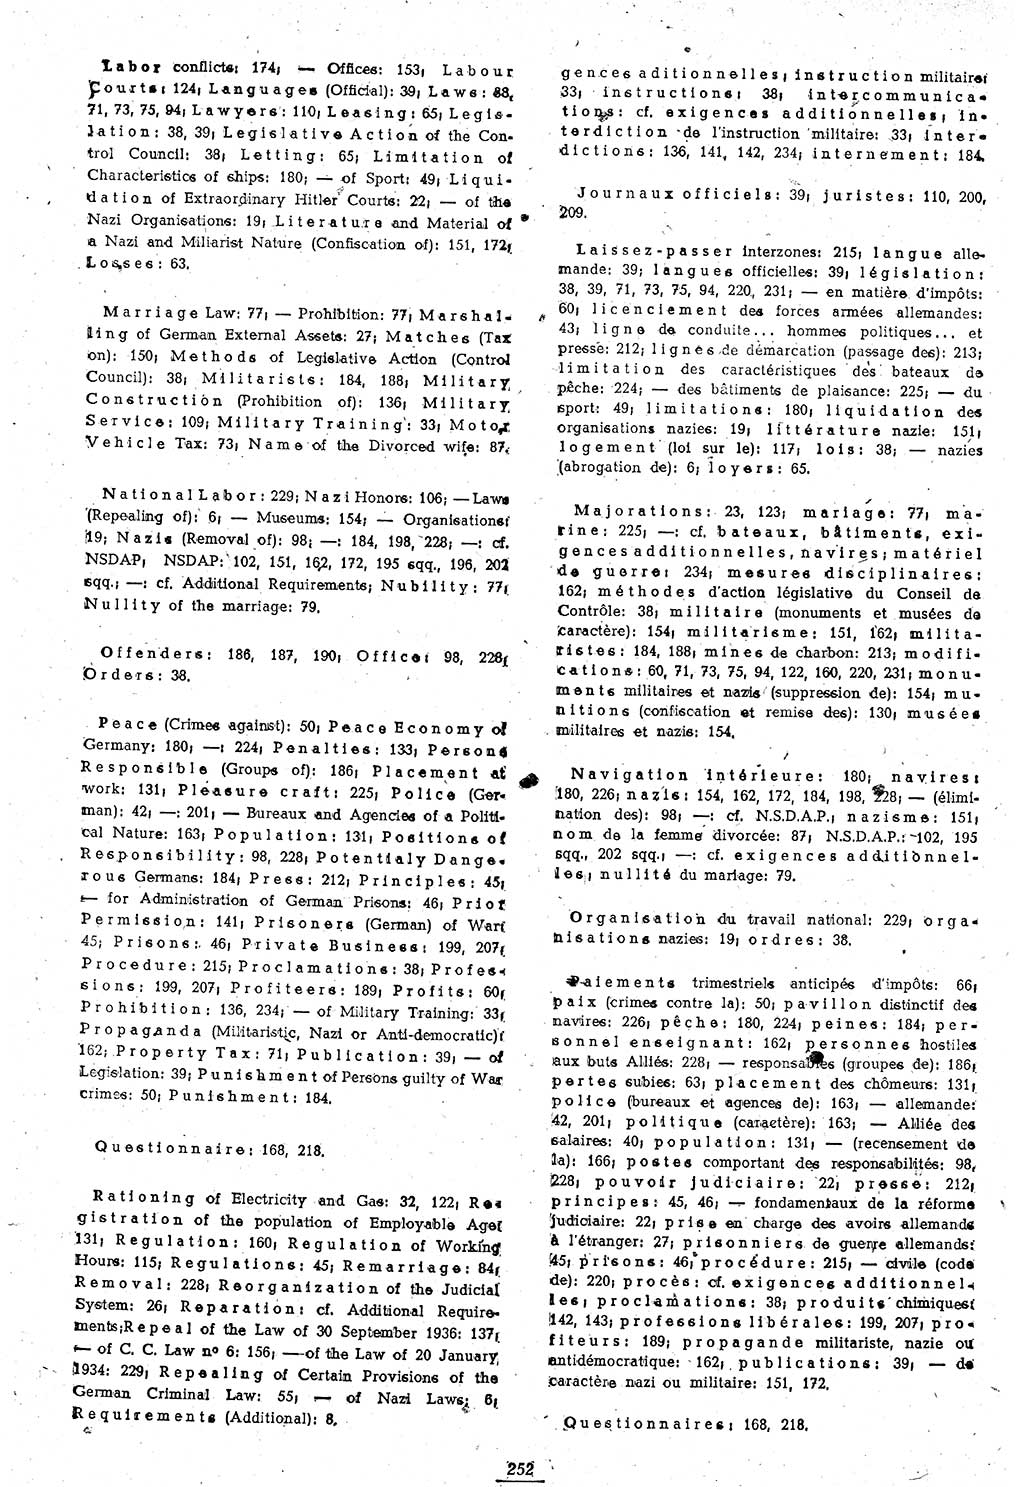 Amtsblatt des Kontrollrats (ABlKR) in Deutschland 1946, Seite 252/1 (ABlKR Dtl. 1946, S. 252/1)